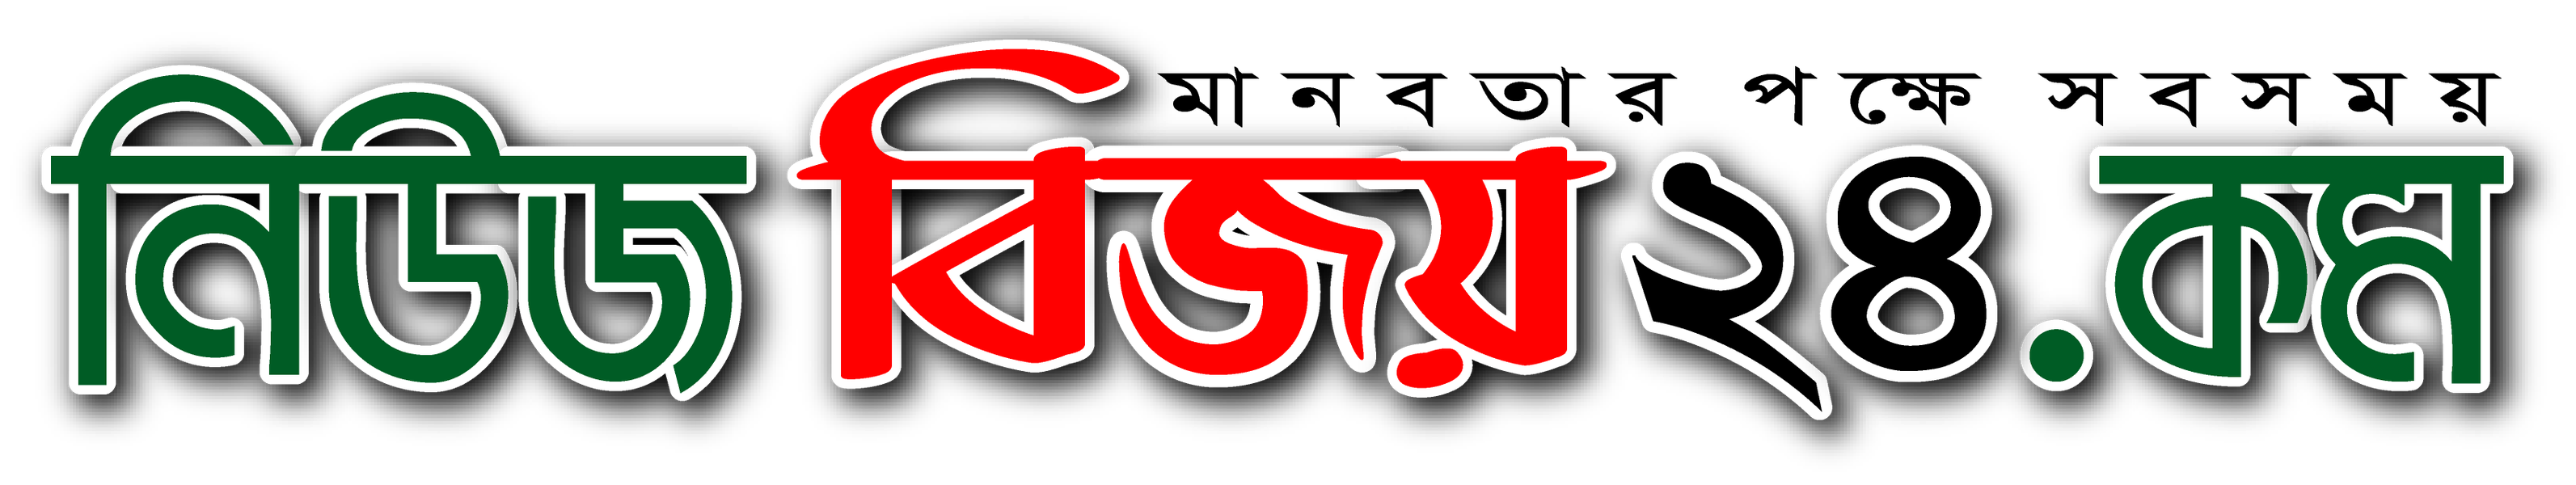 NewsBijoy A Online Newspaper Bangladesh